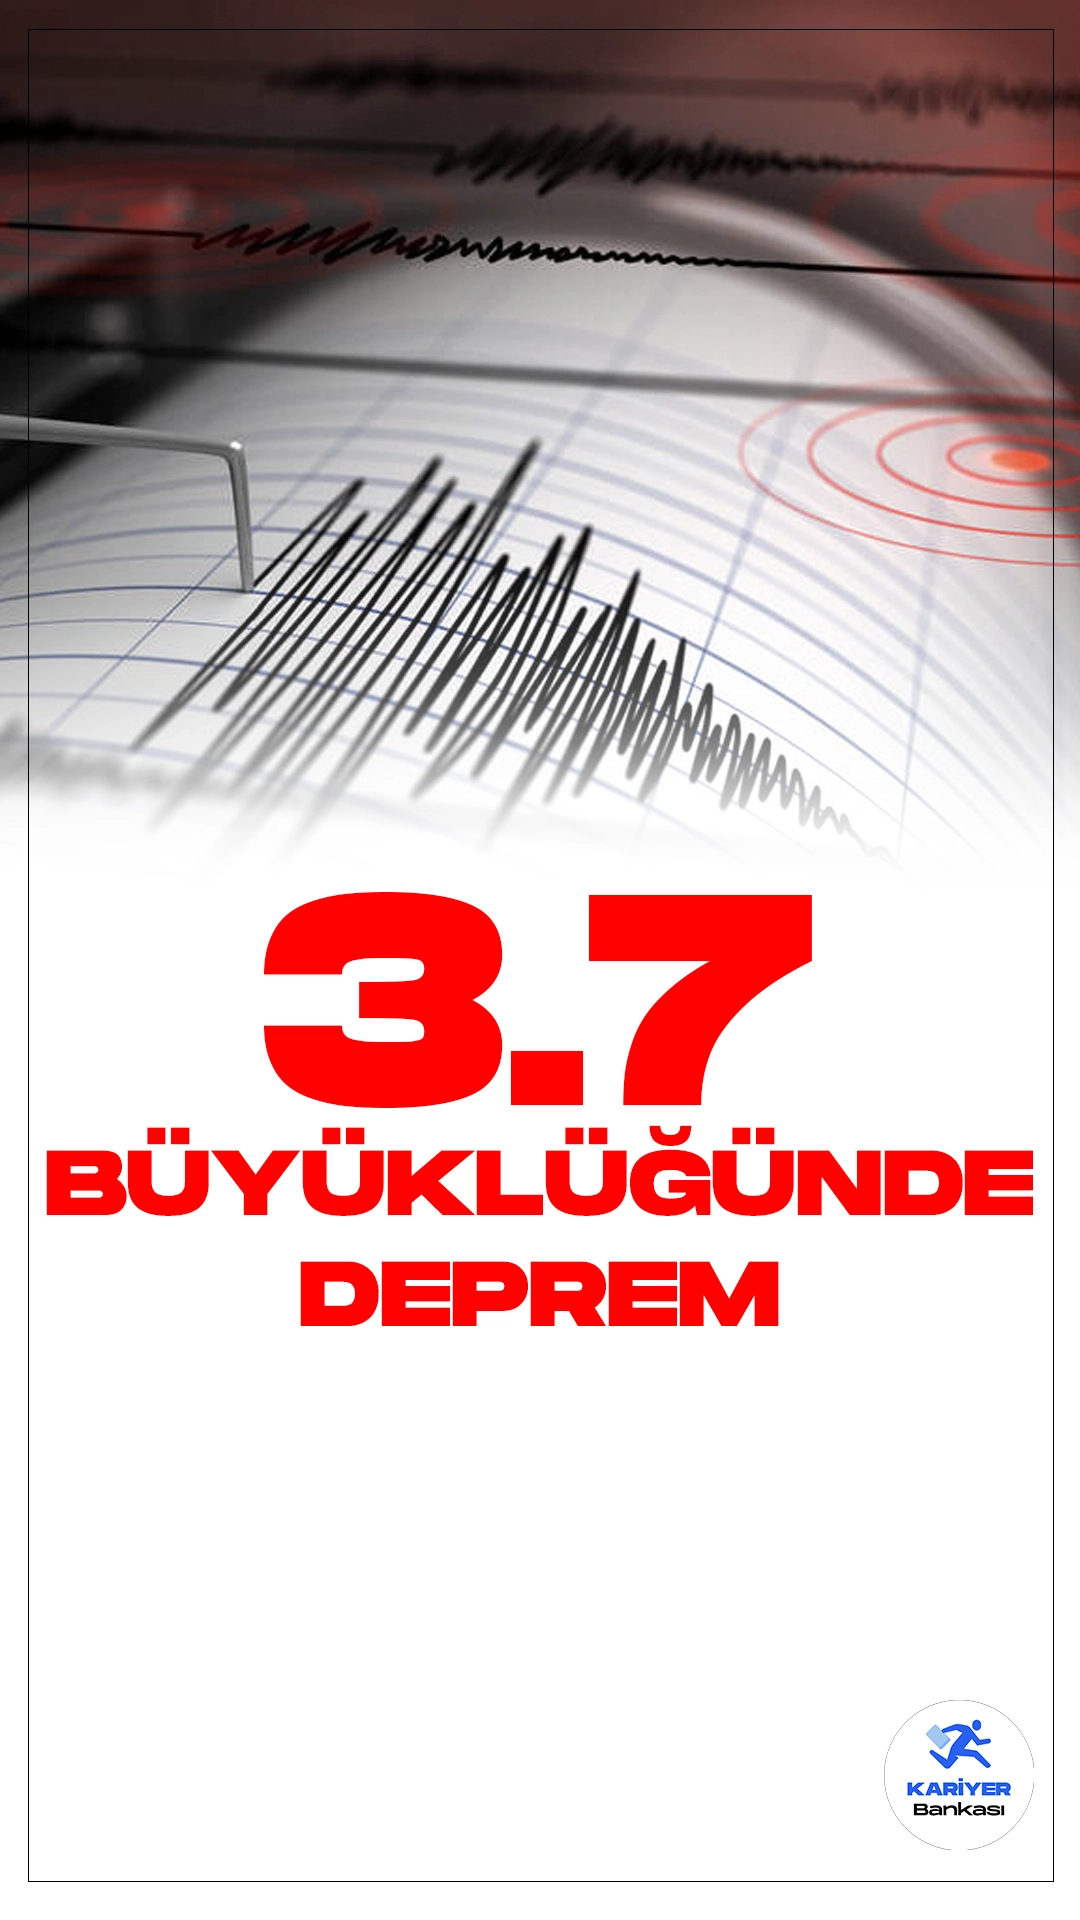 Adana'da 3.7 Büyüklüğünde Deprem Oldu.İçişleri Bakanlığı Afet ve Acil Durum Yönetimi Başkanlığı Deprem Dairesi sayfasından yayımlanan son dakika duyurusunda, Adana'nın Saimbeyli ilçesinde 3.7 büyüklüğünde deprem meydana geldiği aktarıldı.